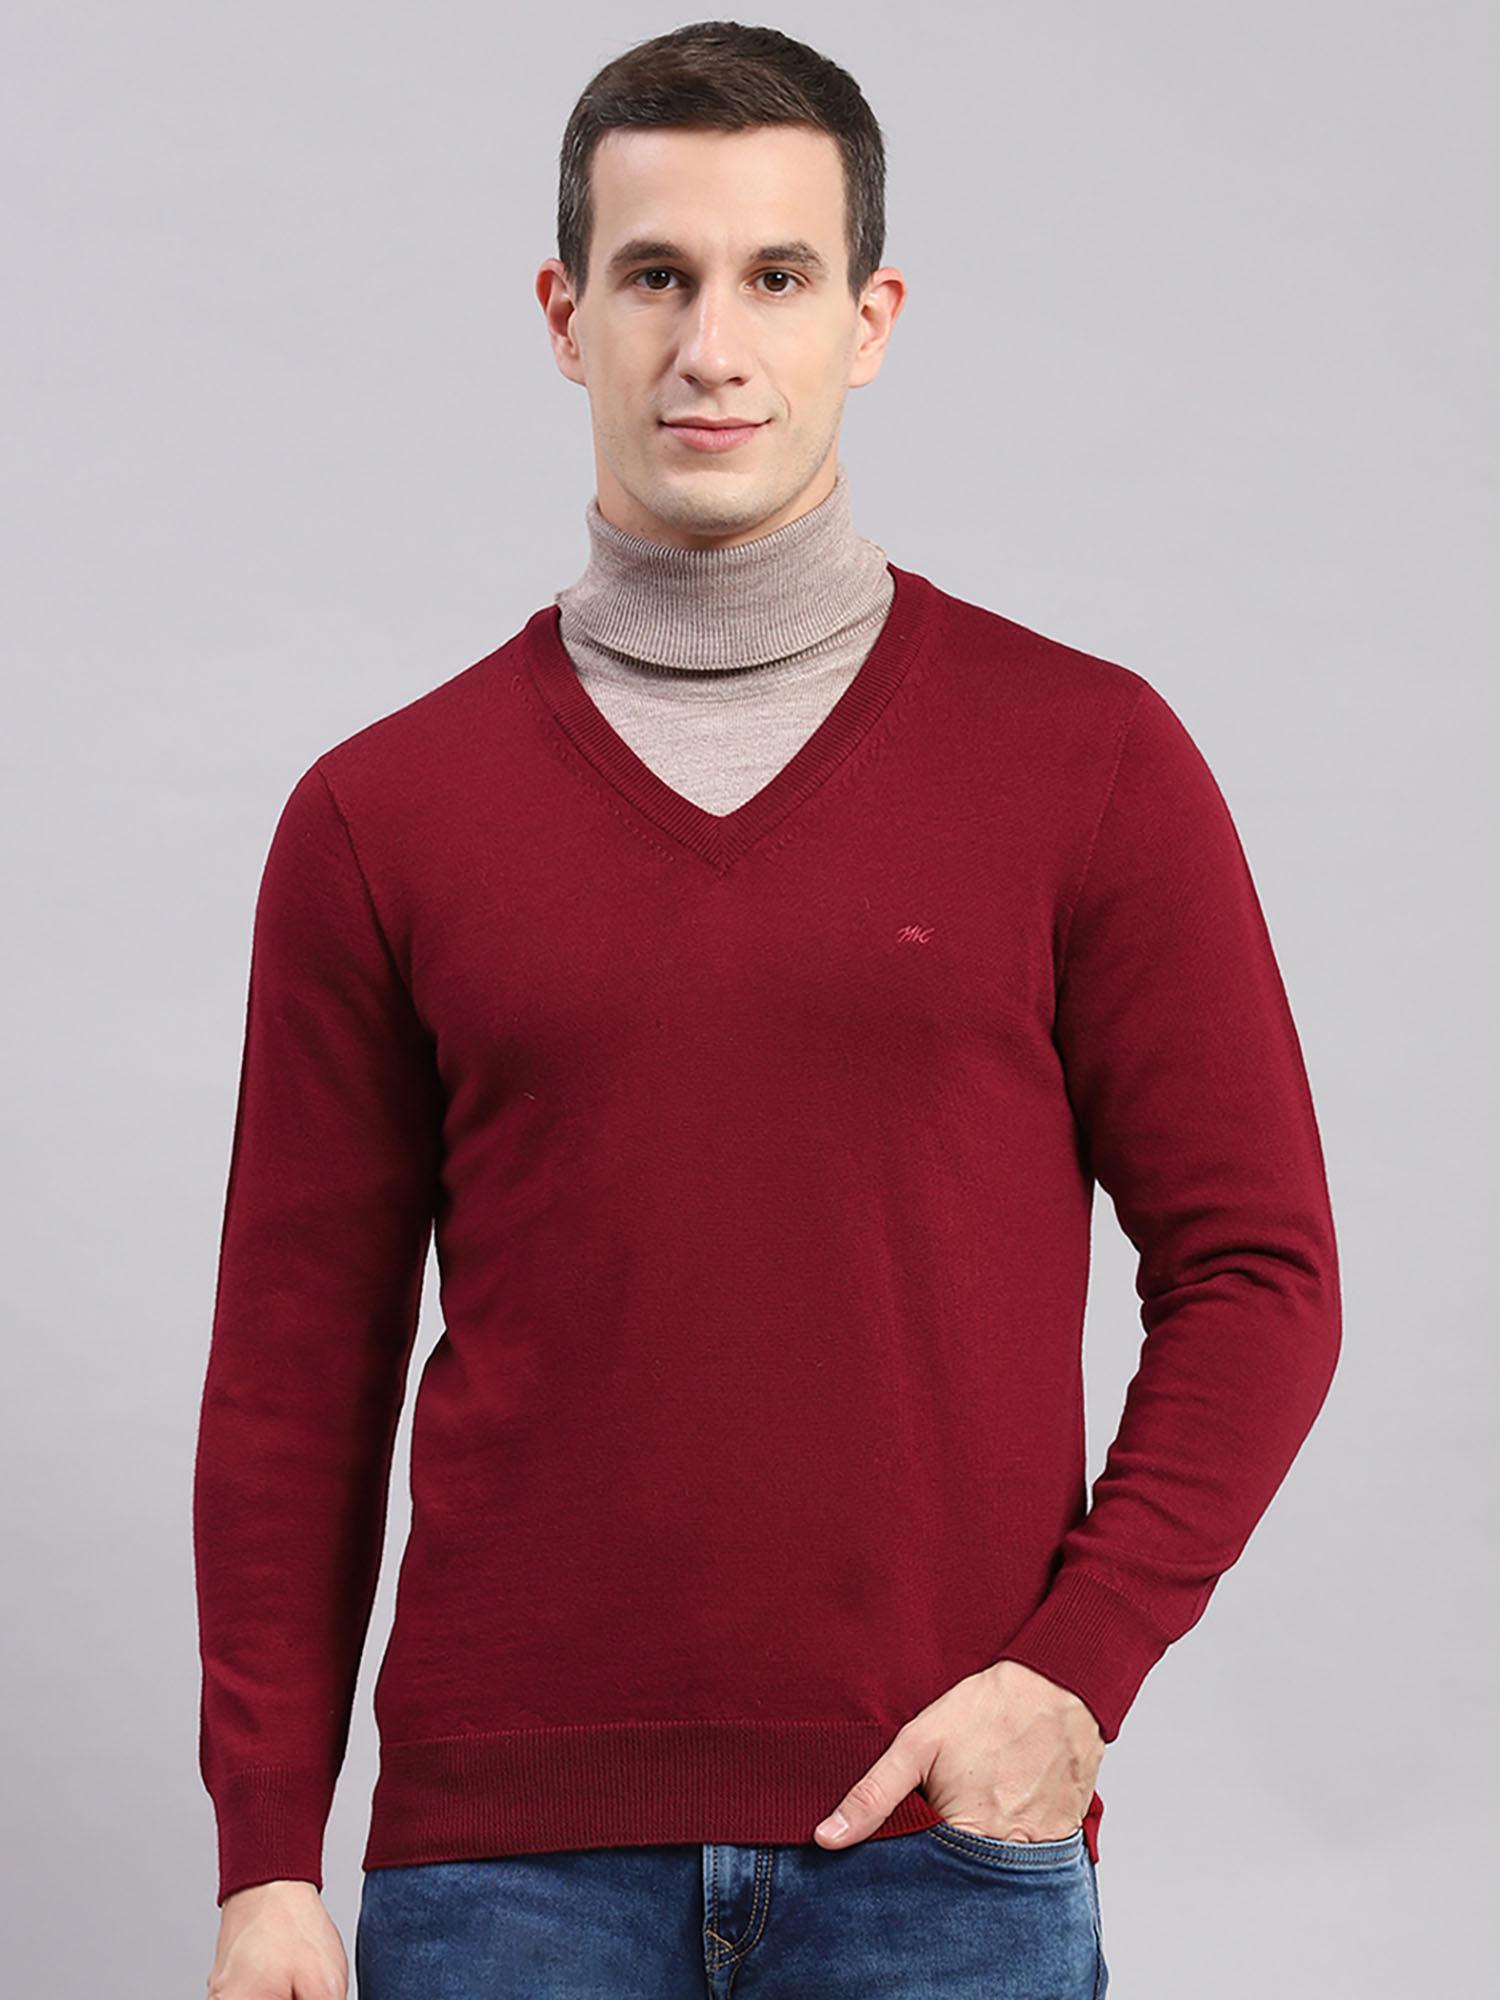 Medium Maroon Solid V Neck Sweater